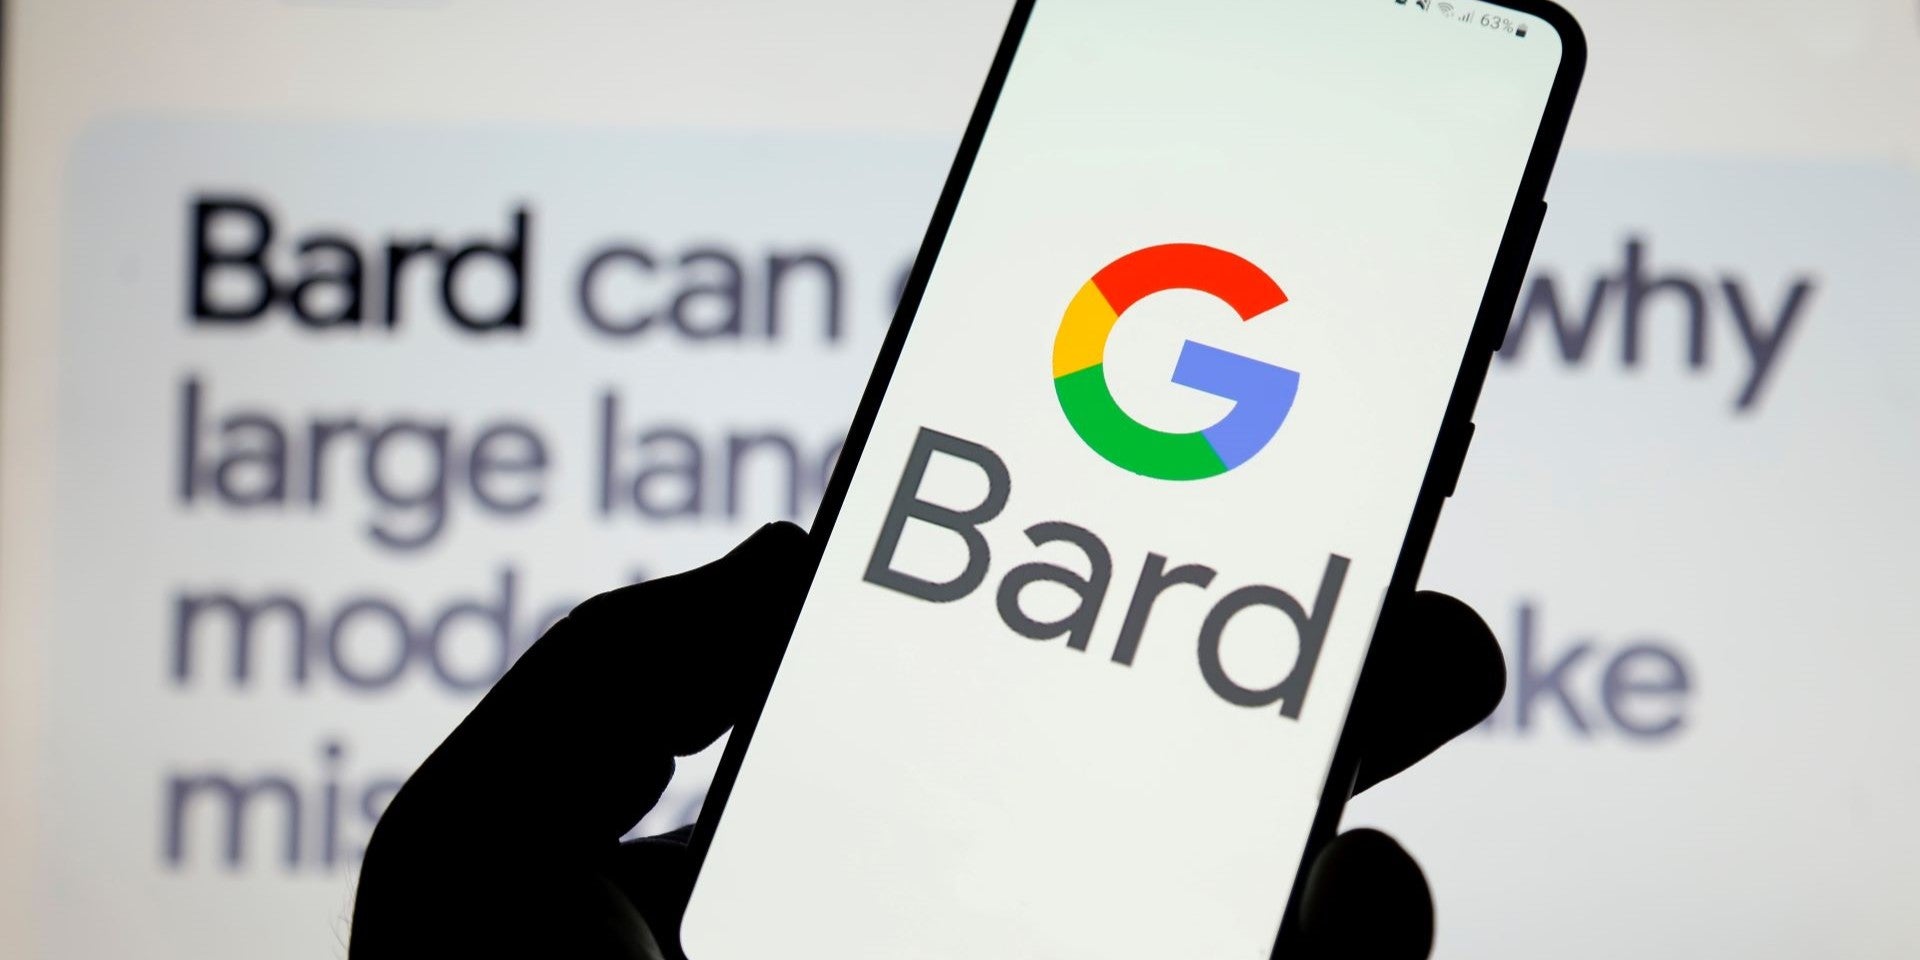 Bard, chatbotul Google, îndeamnă la dezinformare în 78% din cazuri